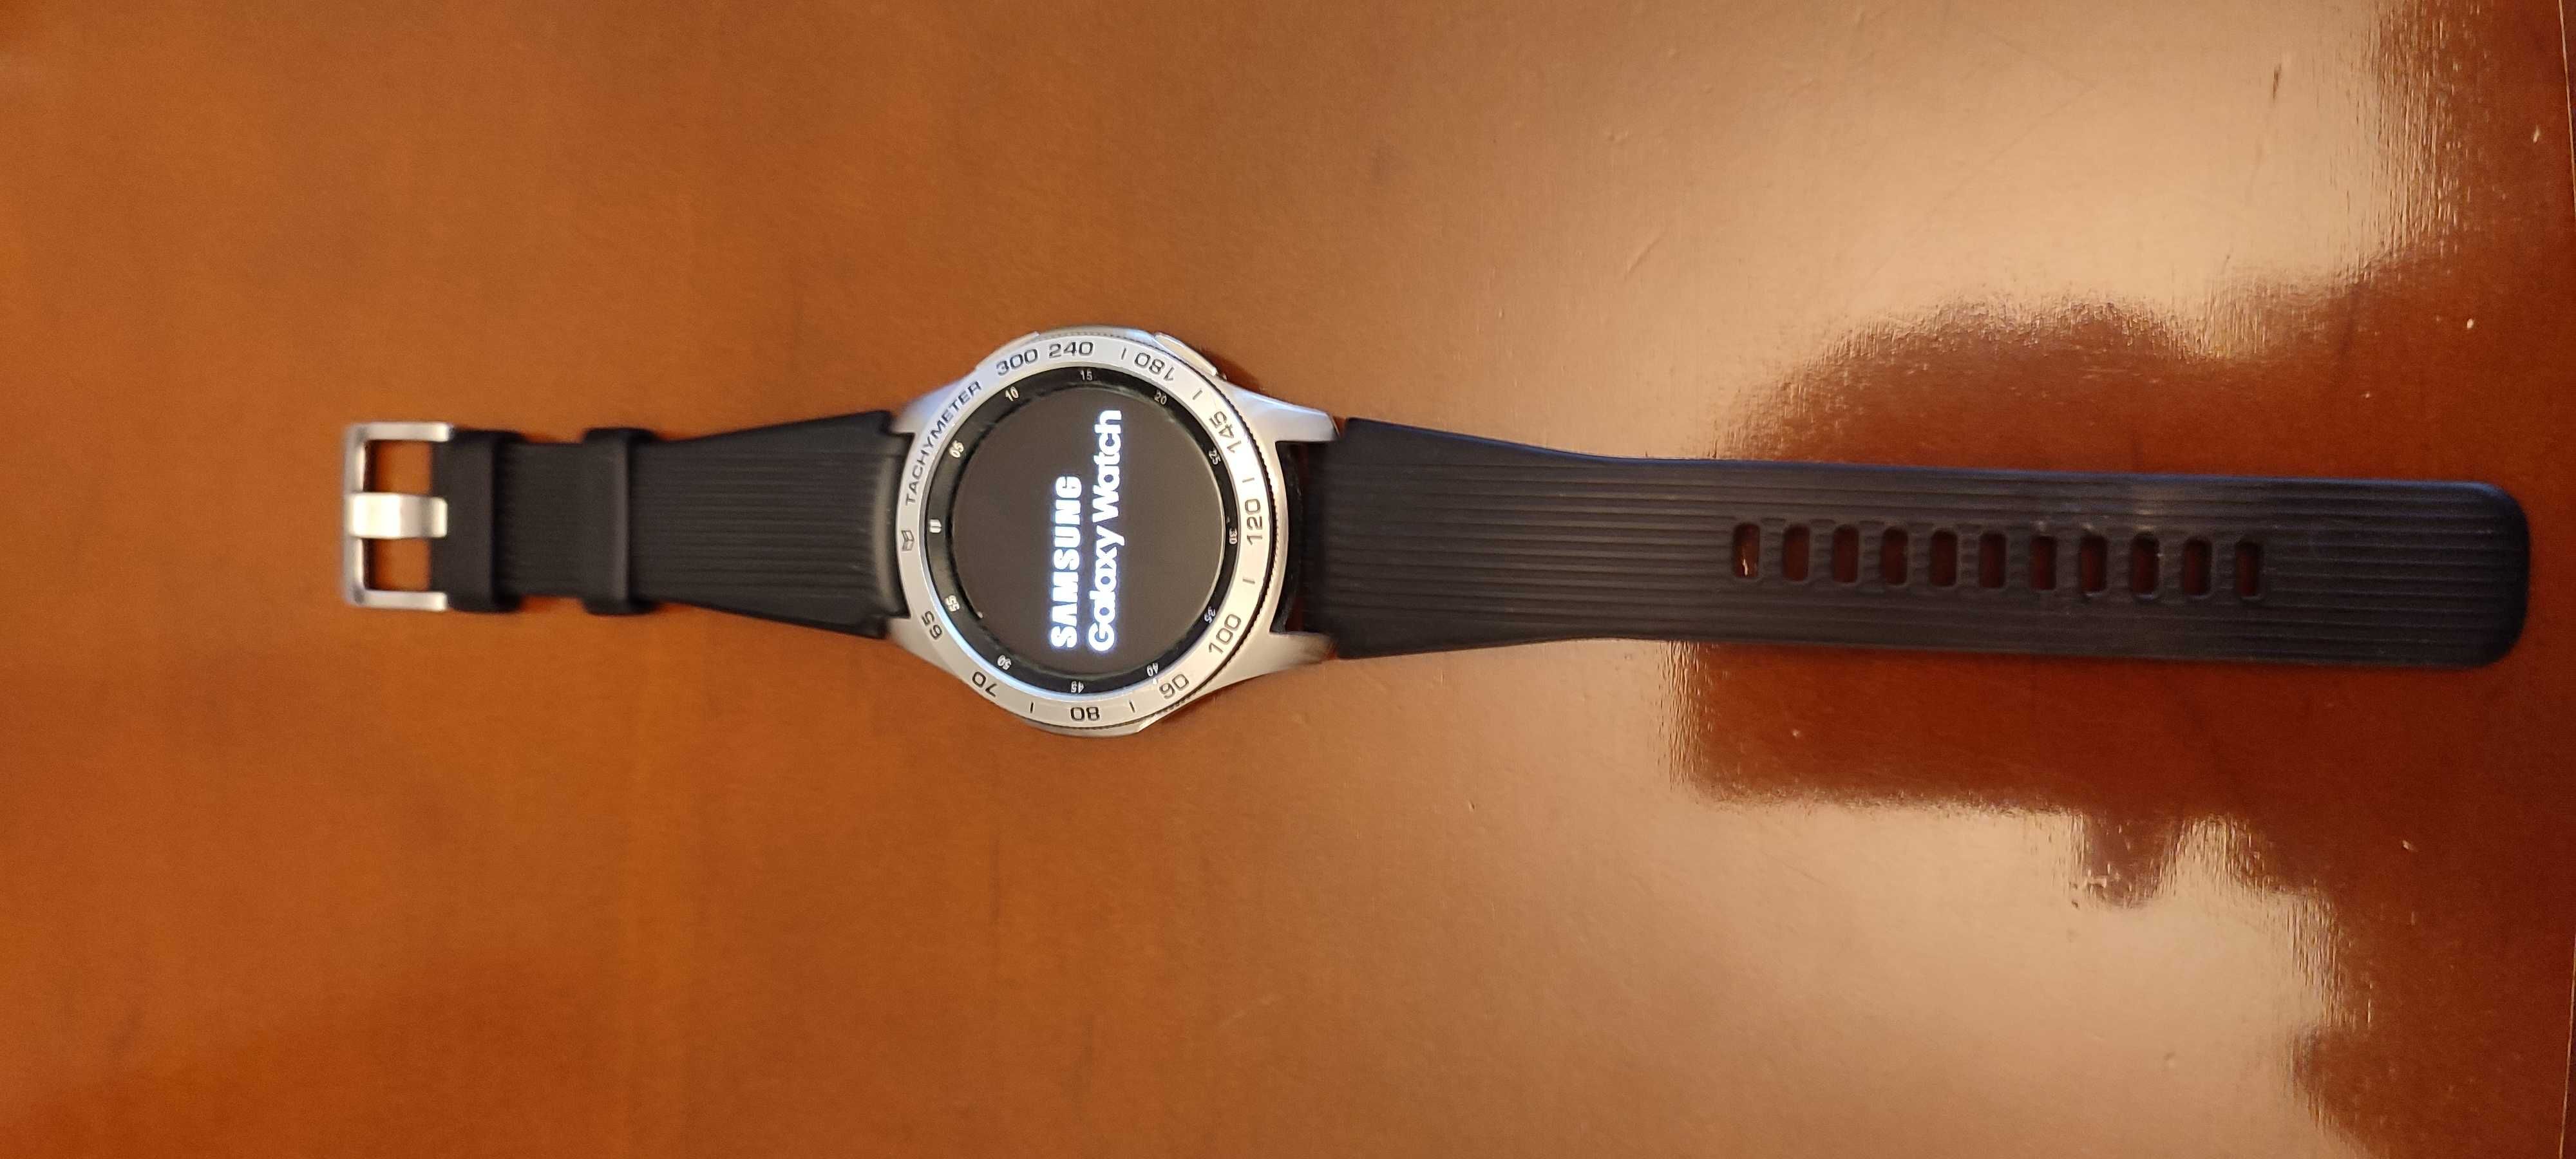 Samsung Galaxy watch 46mm LTE